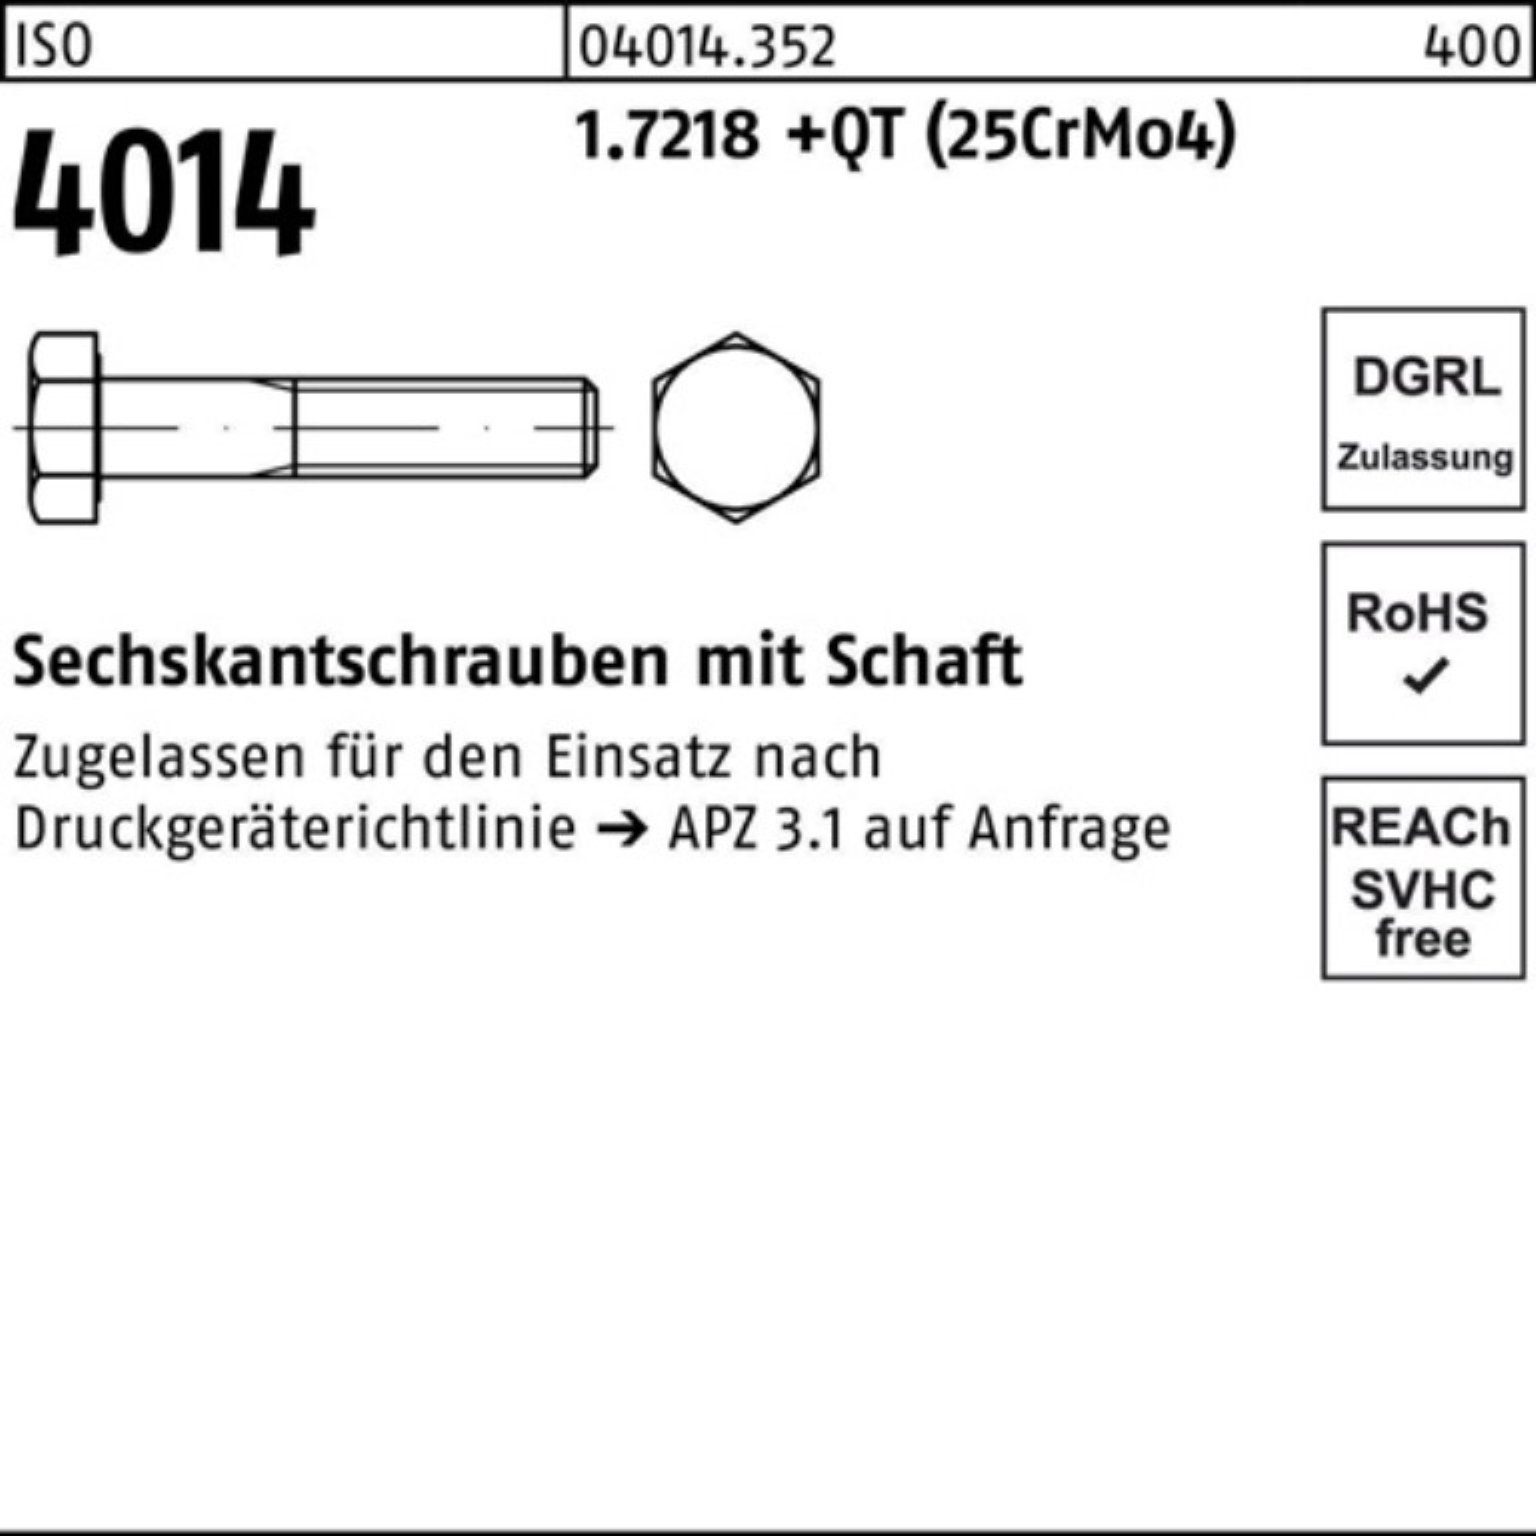 Pack Bufab (25Cr 1.7218 M33x 100er Schaft ISO Sechskantschraube Sechskantschraube 4014 +QT 170